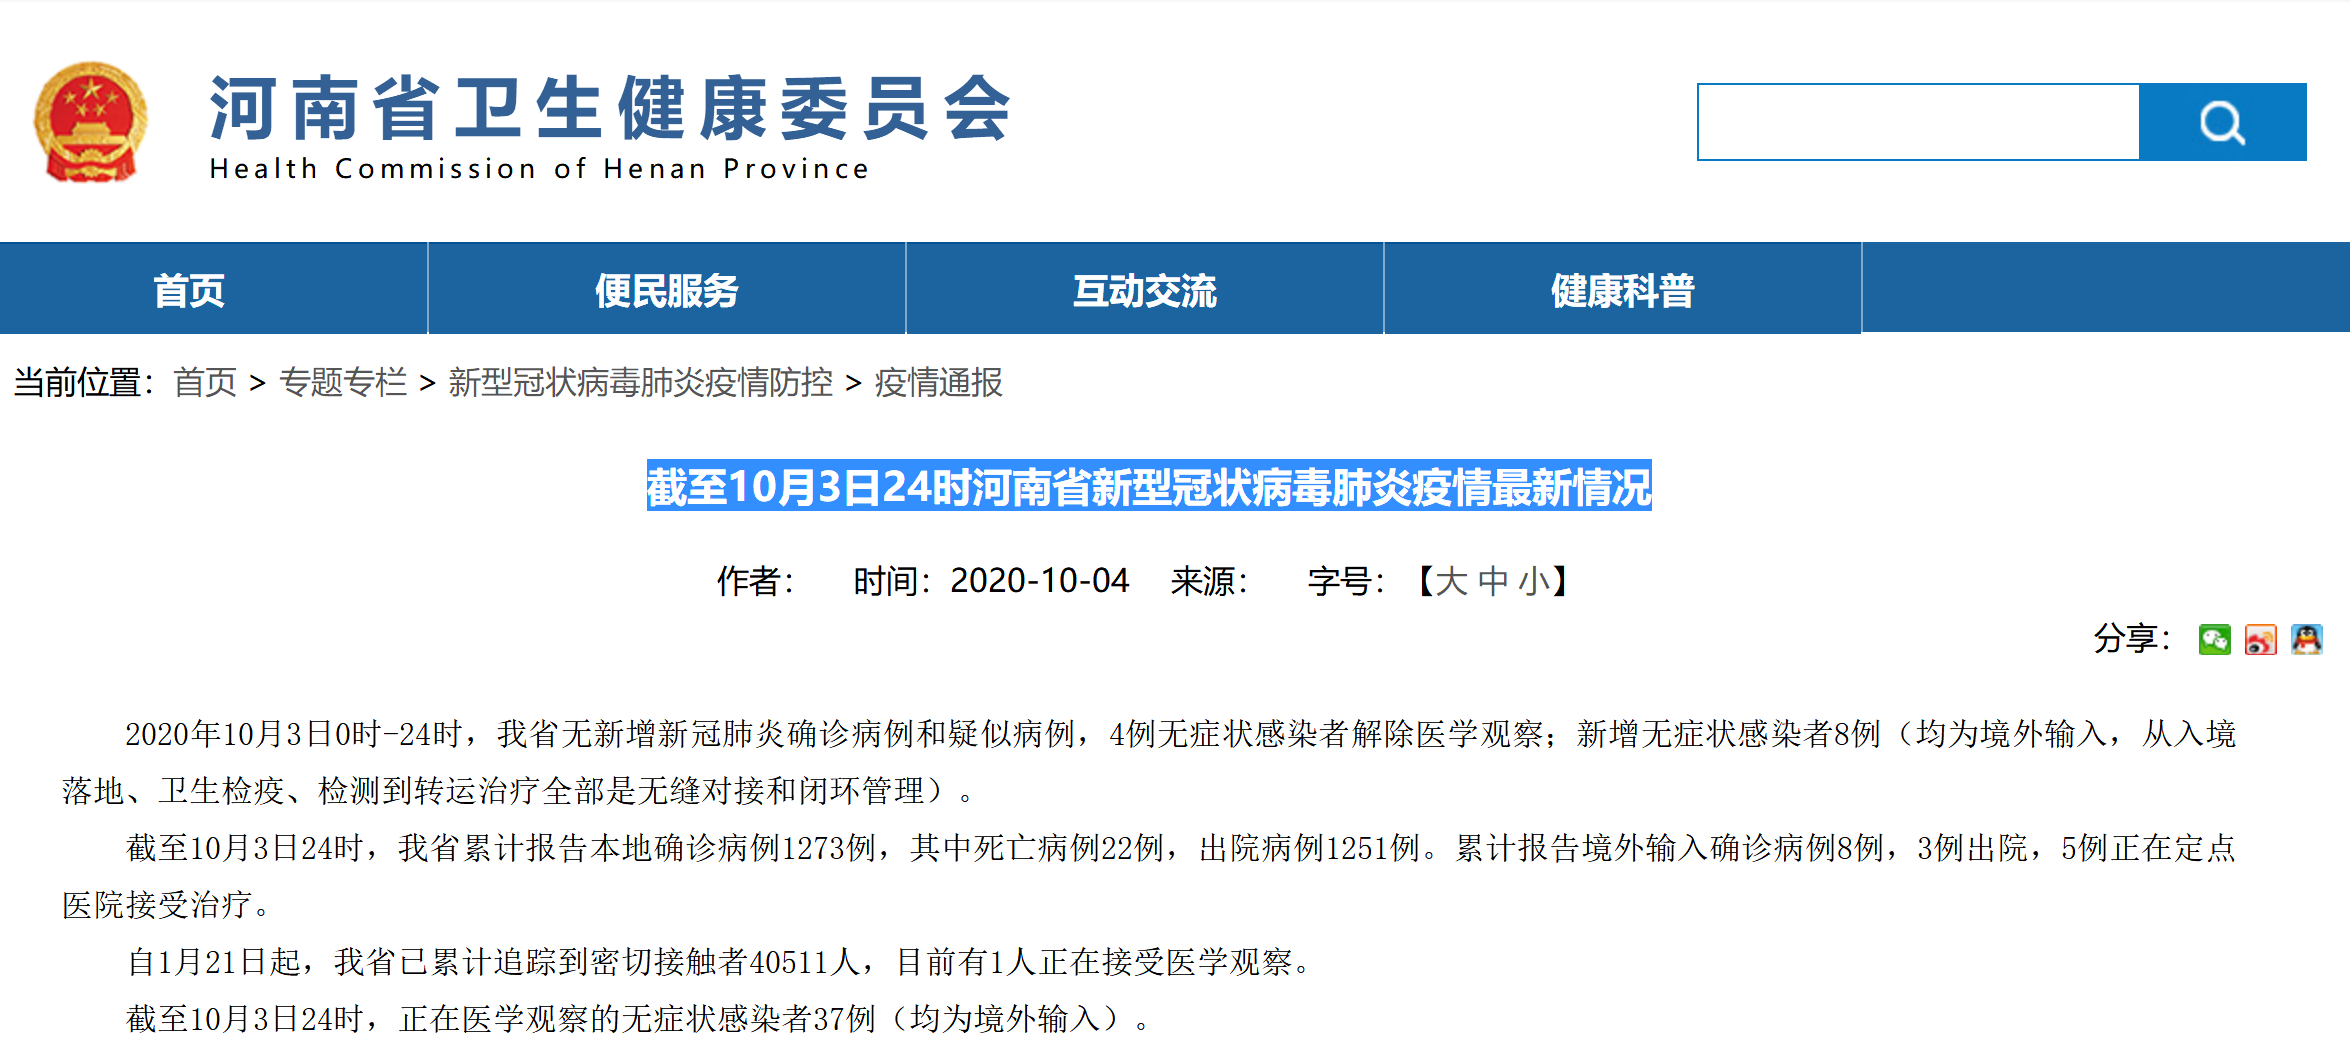 截至10月3日24时河南省无新增新冠肺炎确诊病例和疑似病例